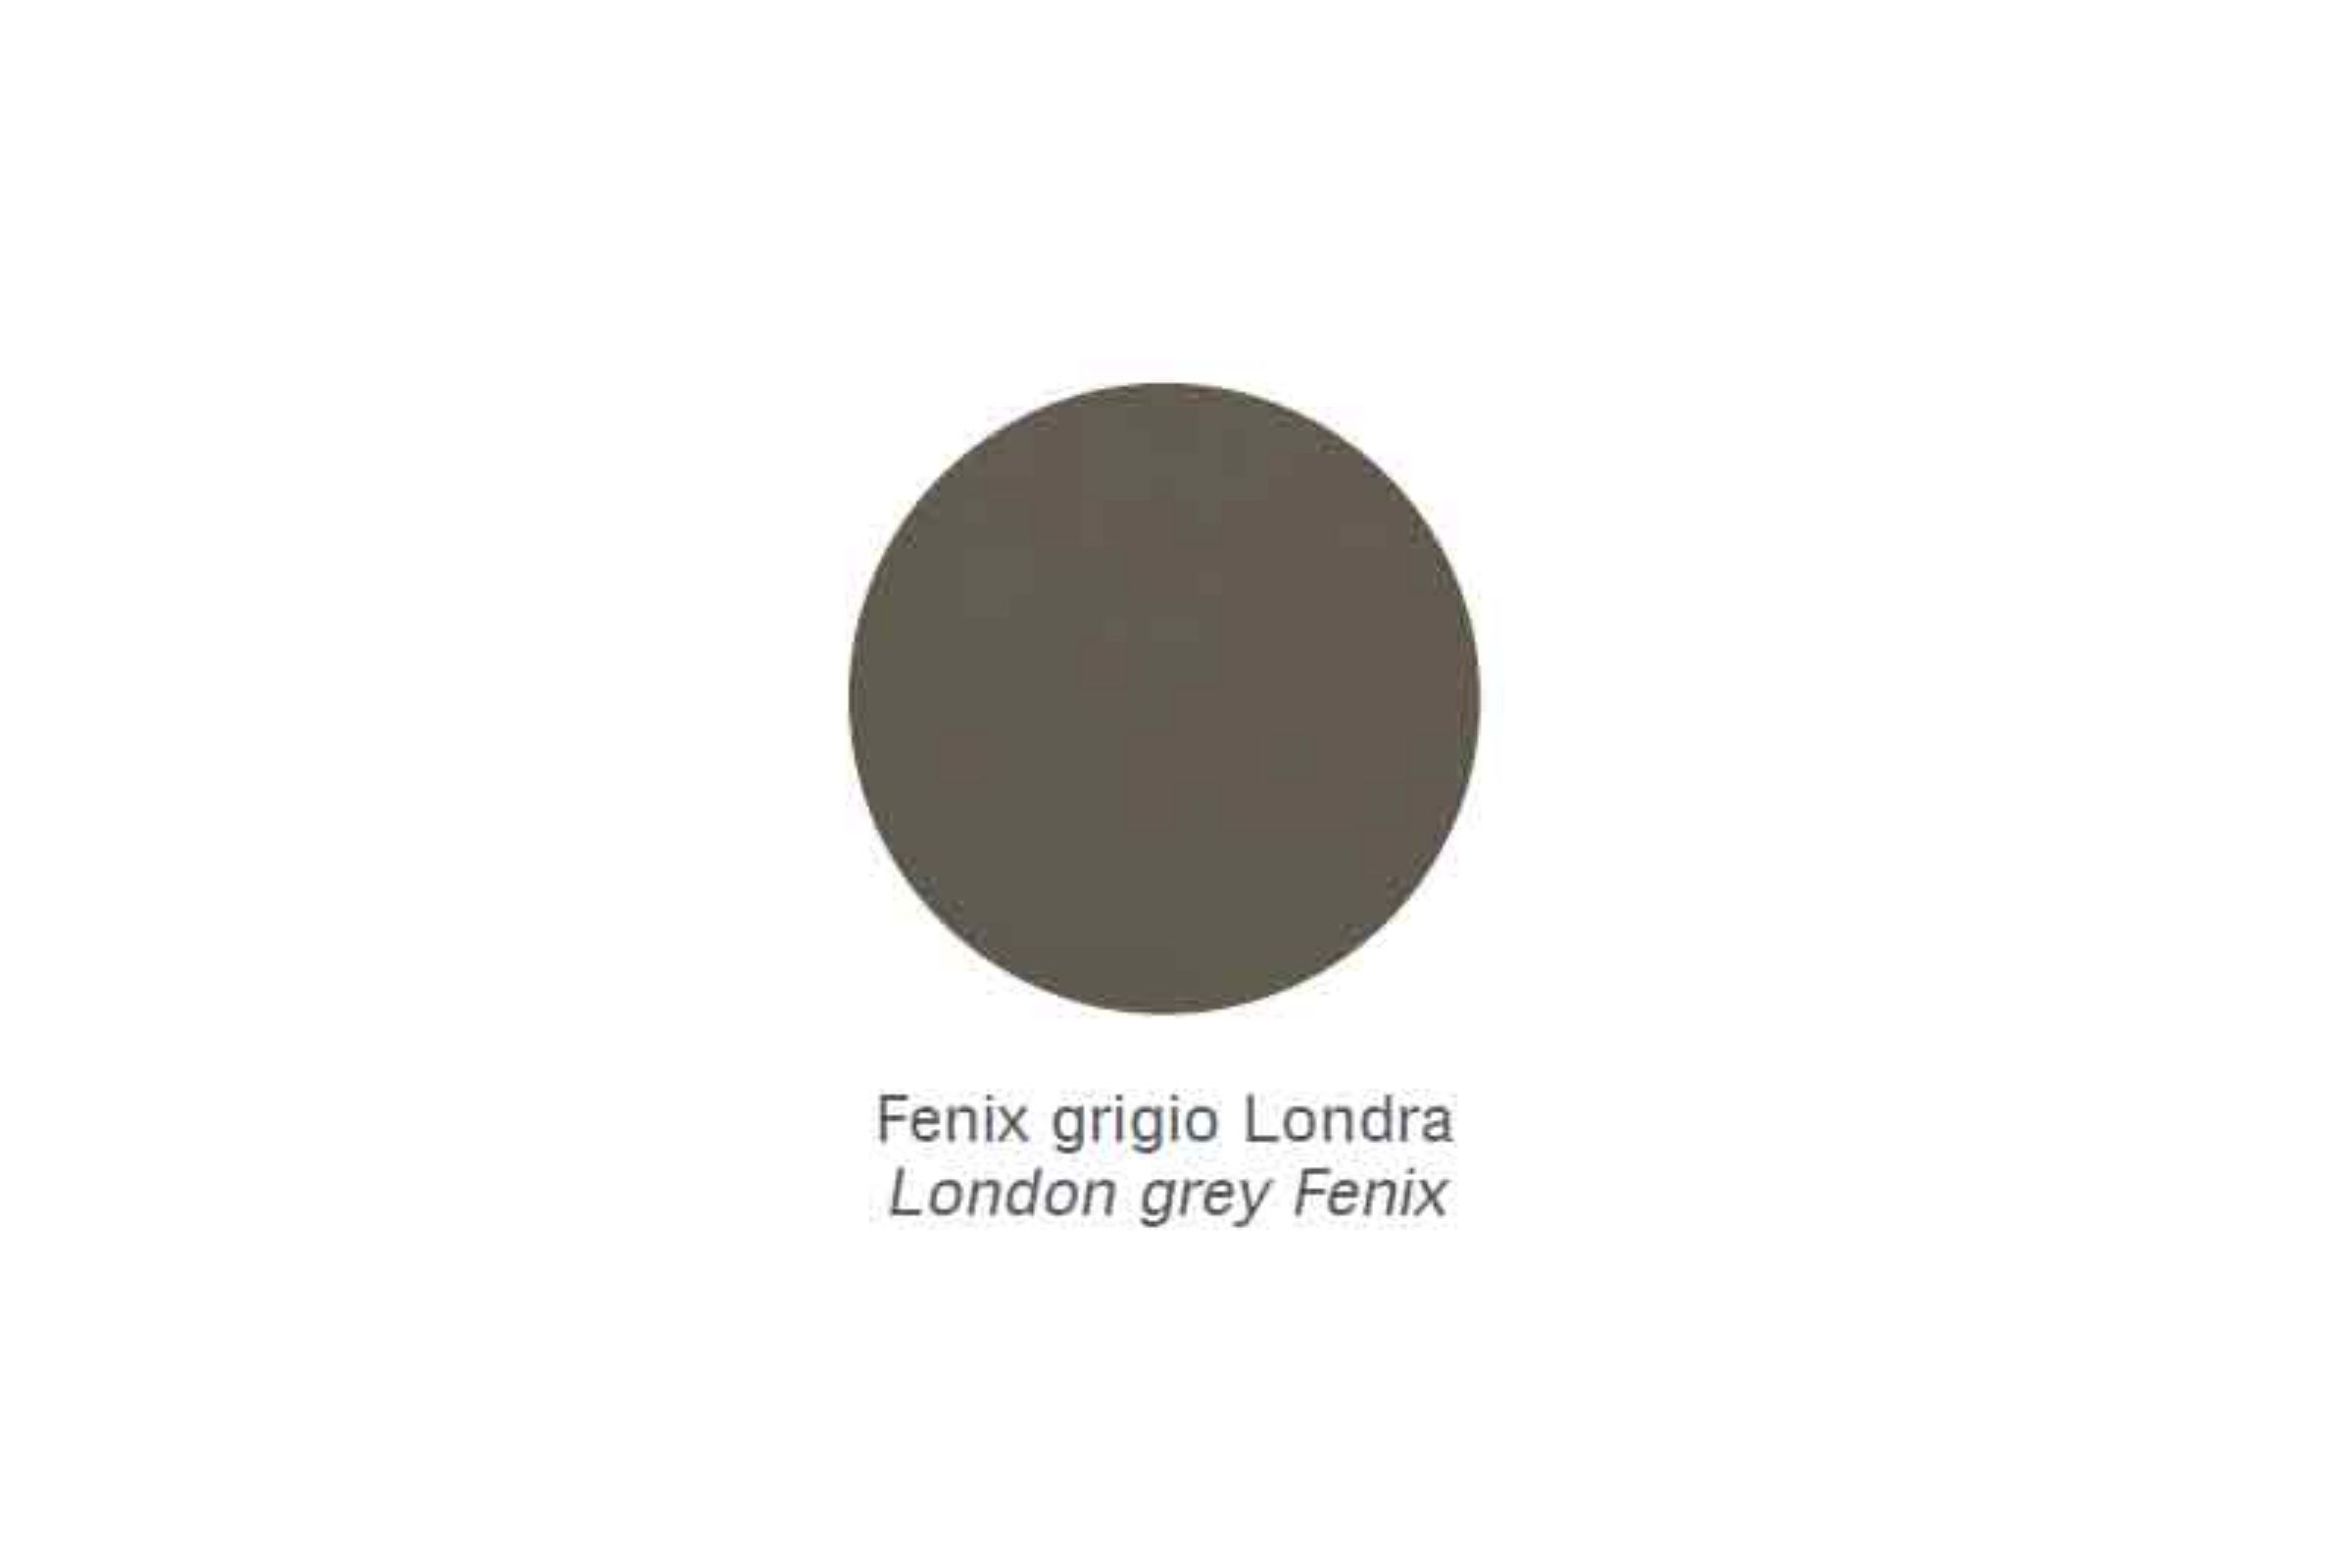 Mensola con porta carta sotto in metallo cromo Zen - Mensola con porta carta sotto in metallo cromo Zen Fenix grigio Londra